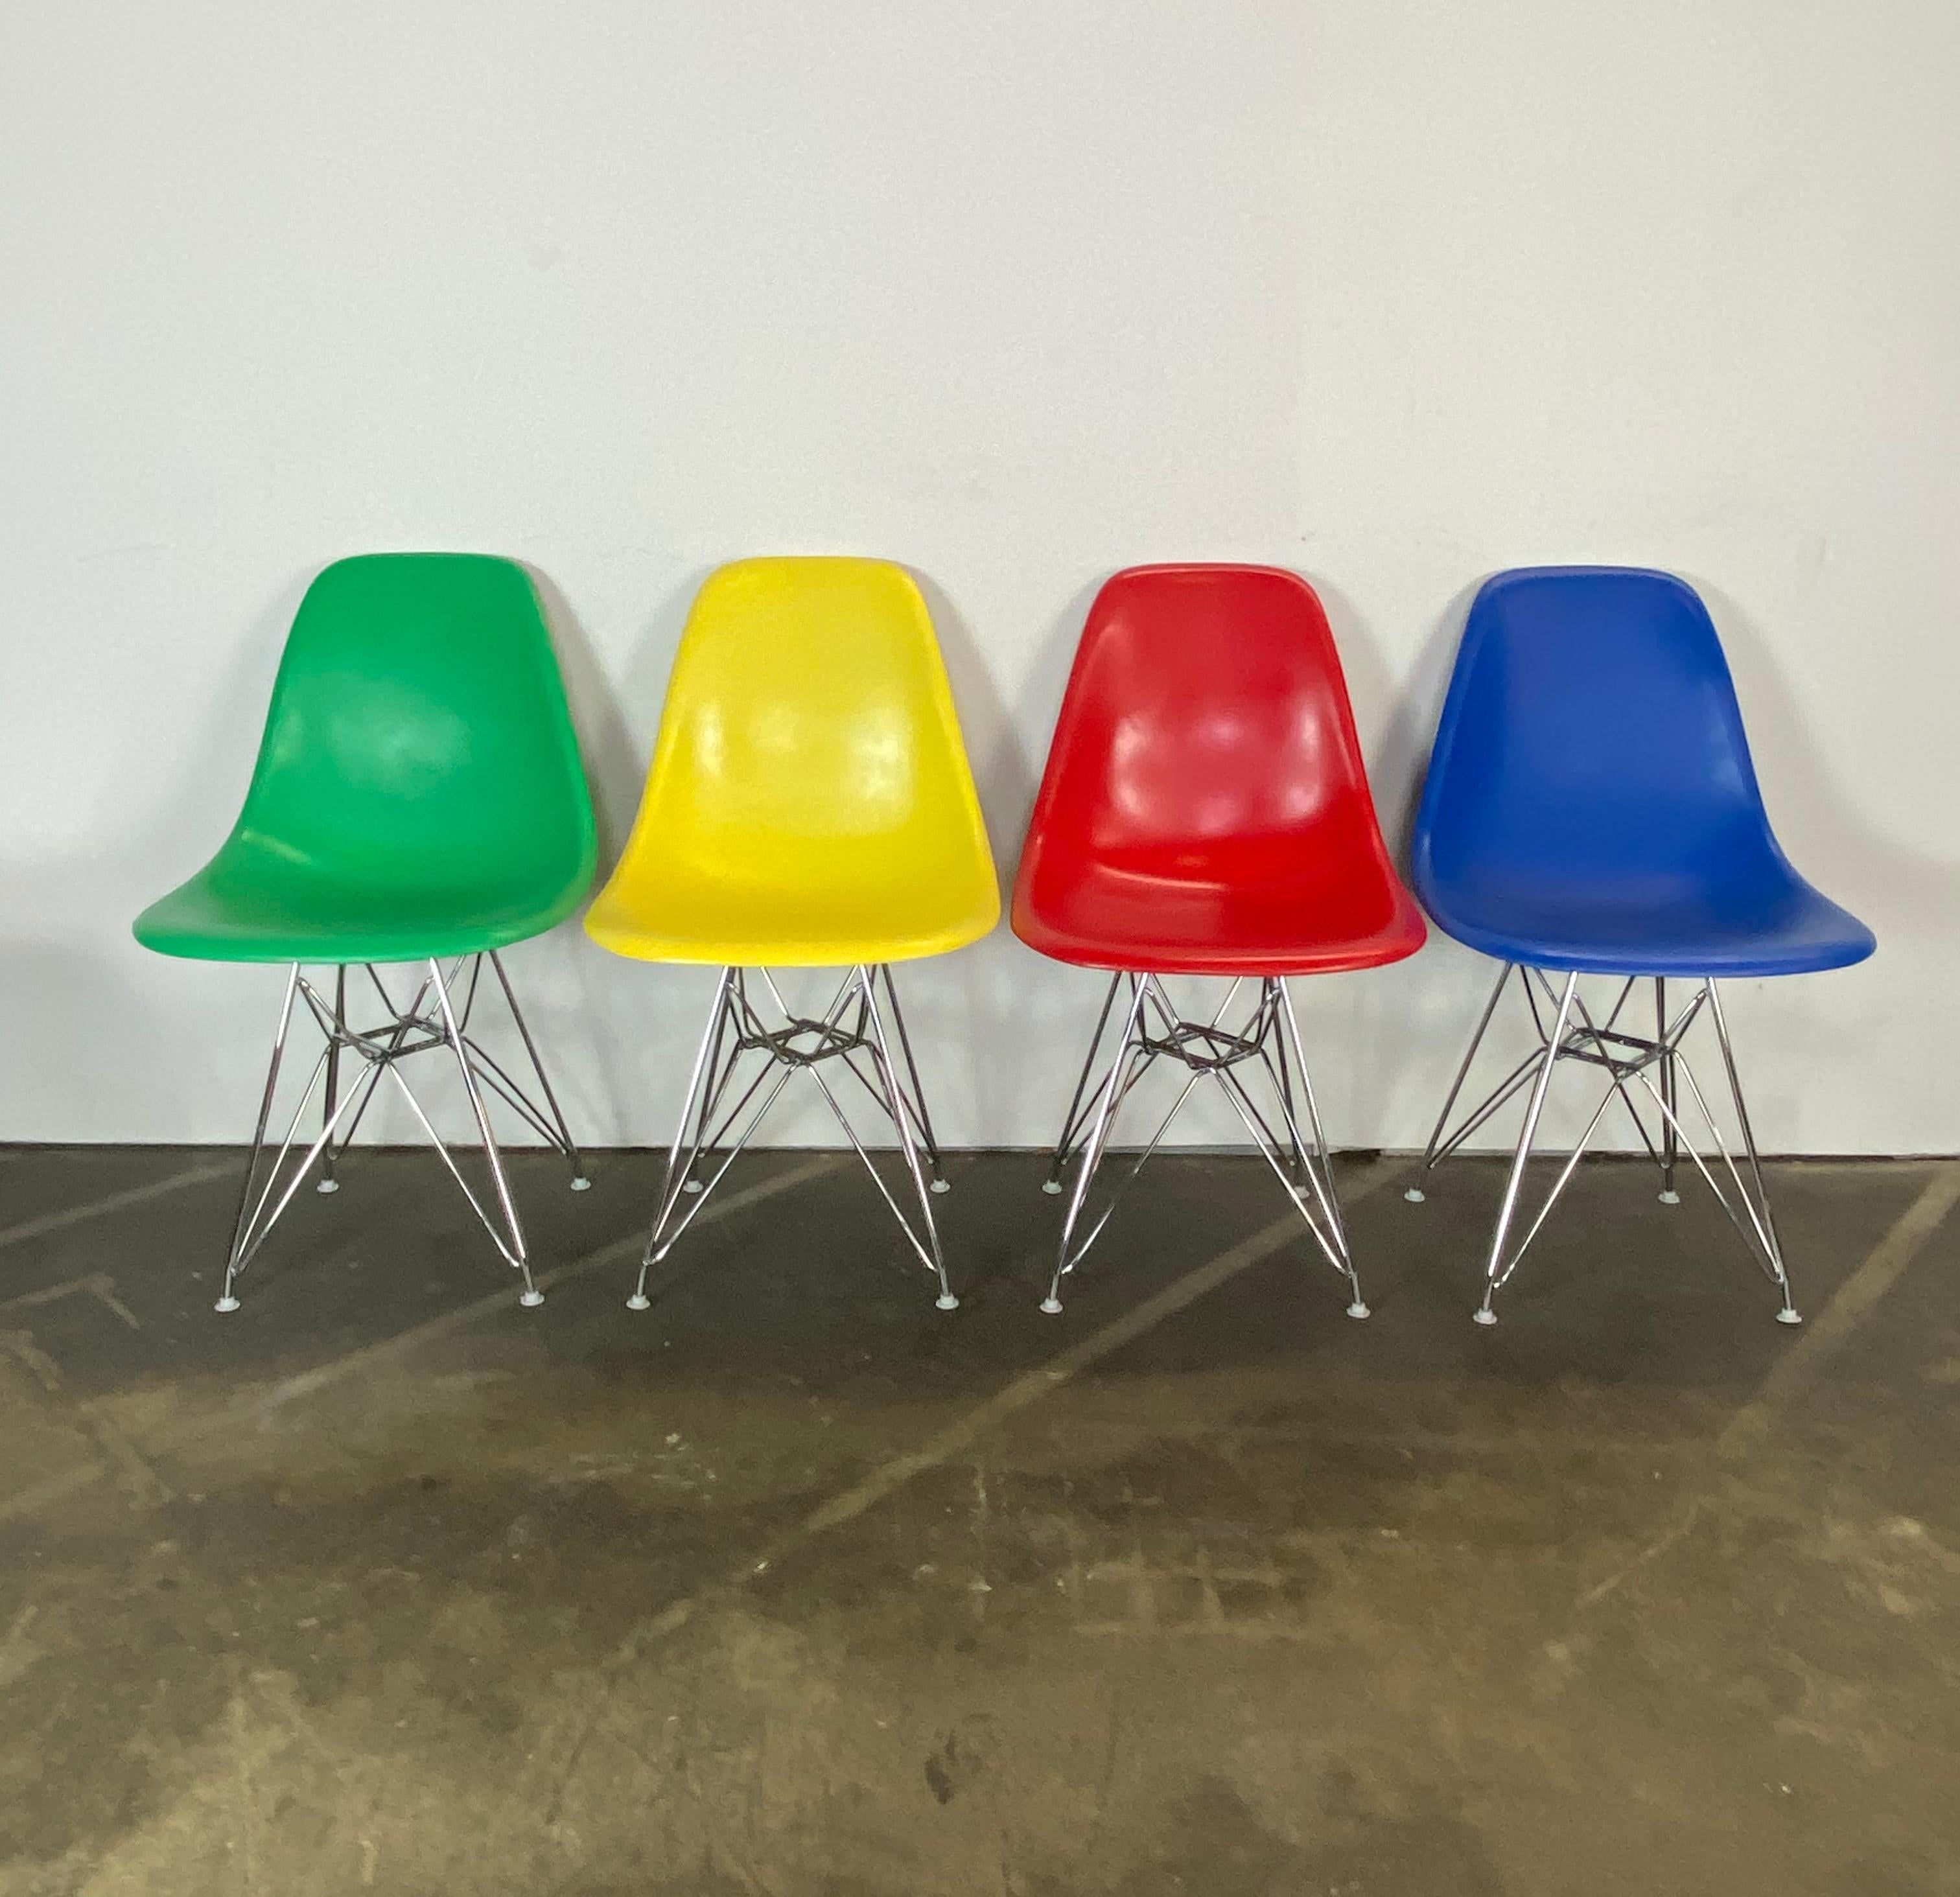 Wunderschöner Satz von 4 Herman Miller Eames Esszimmerstühlen. Die Vintage-Glasfaserschalen sind mit dem Stempel von Herman Miller versehen und garantiert authentisch. Die Oberflächen wurden in leuchtenden Farben (die ursprünglich nicht angeboten